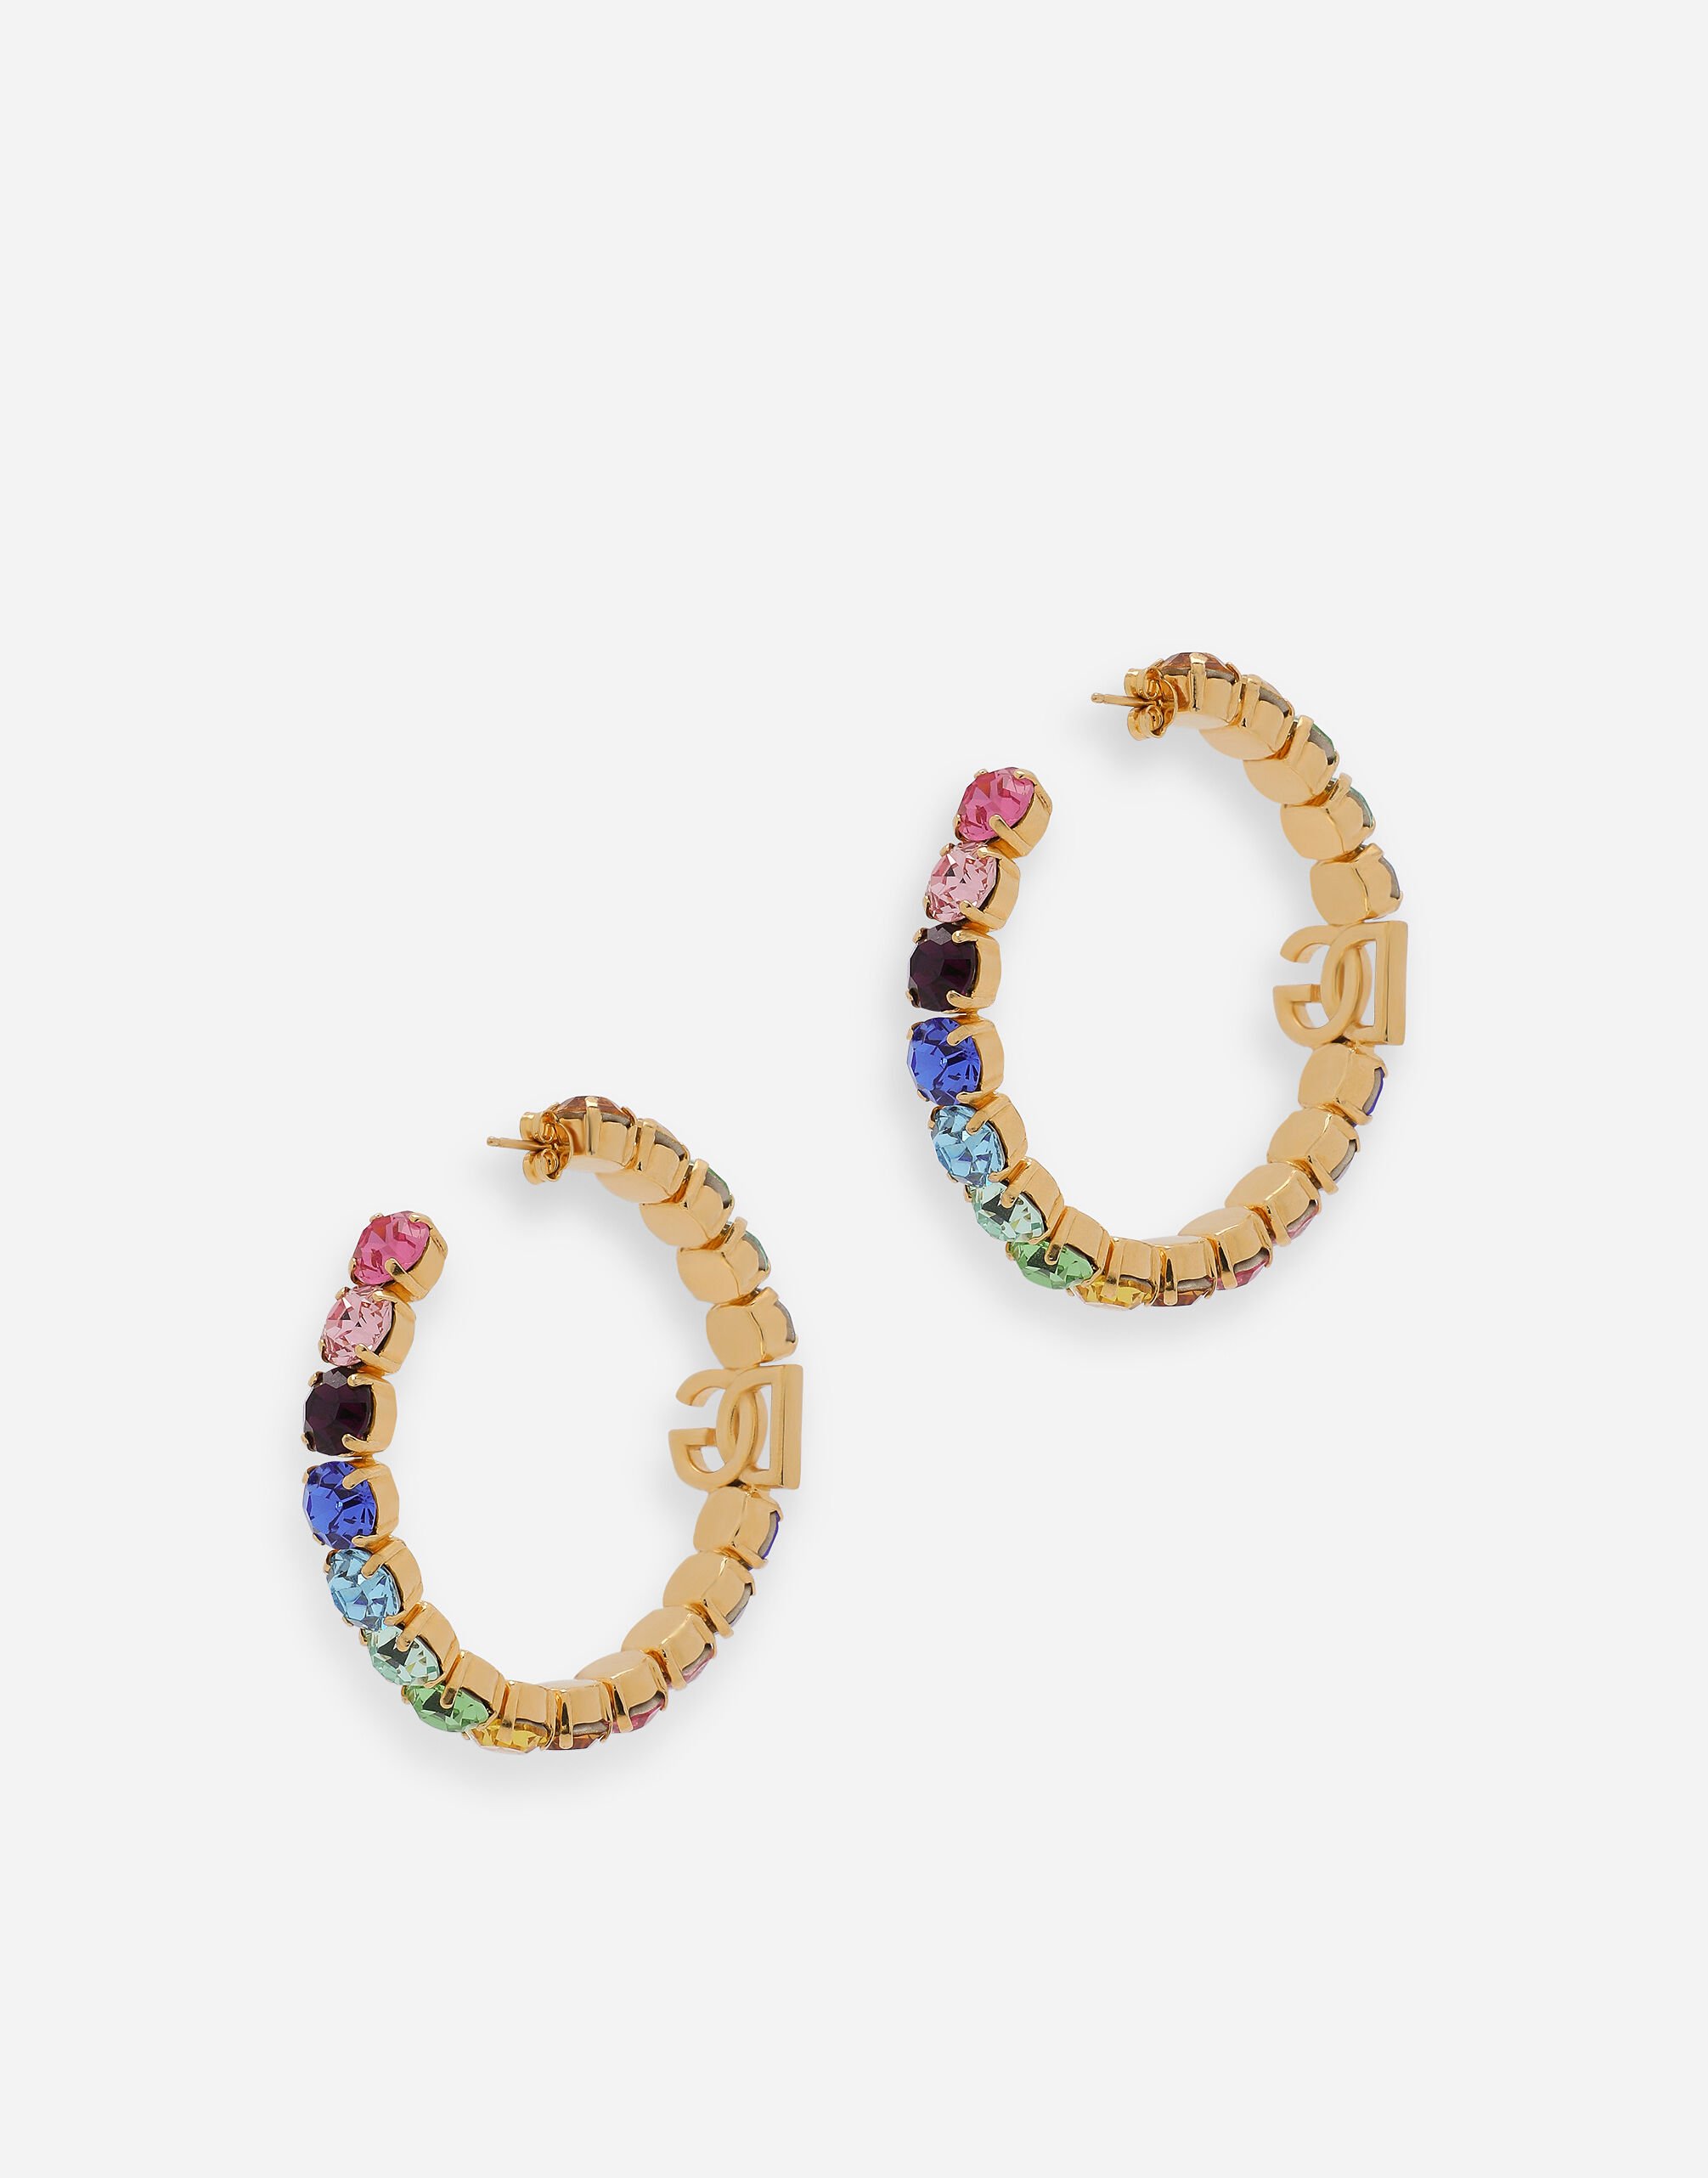 Hoop earrings with DG logo and colorful rhinestones